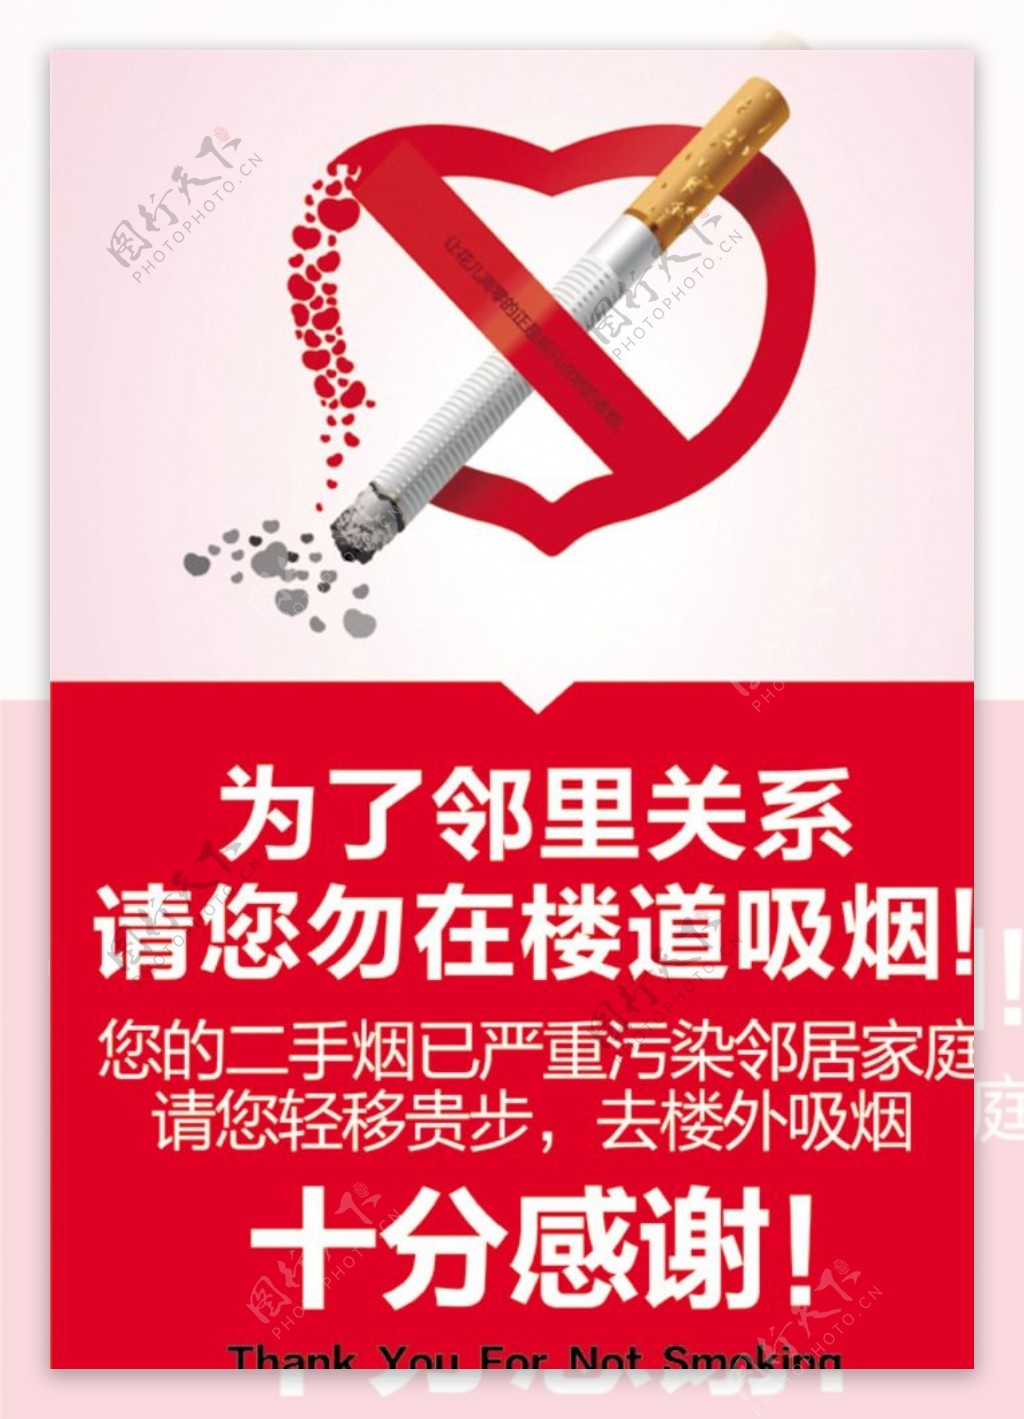 楼道禁止吸烟图片